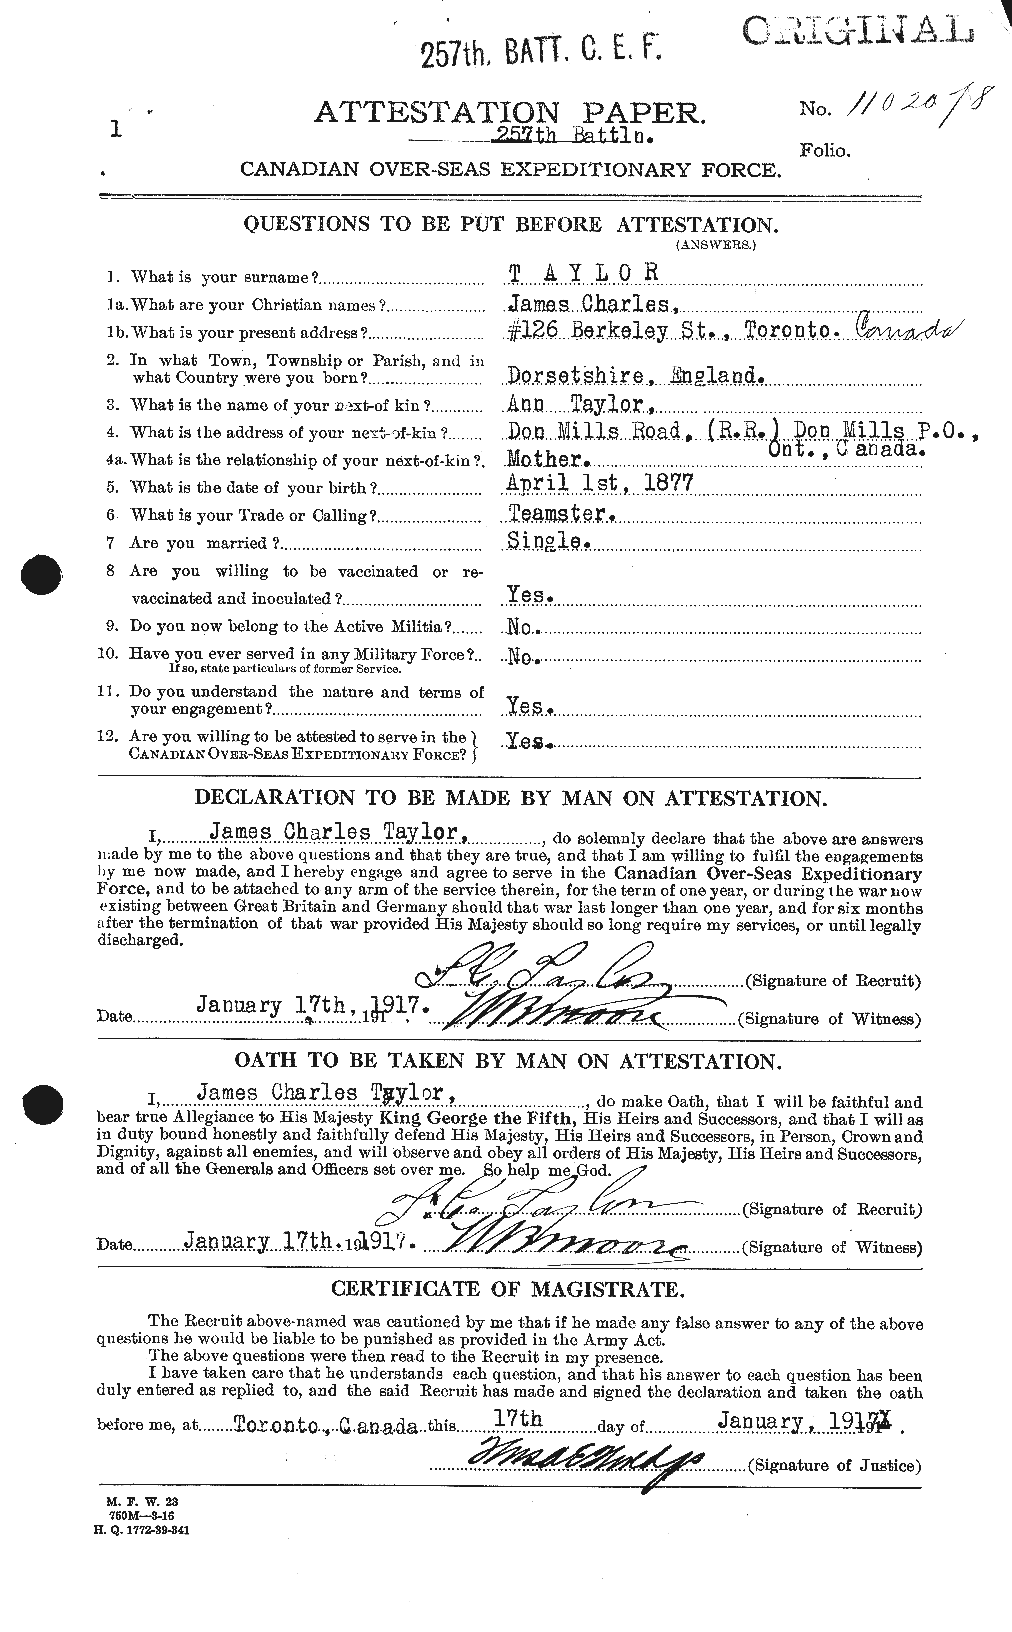 Dossiers du Personnel de la Première Guerre mondiale - CEC 626909a